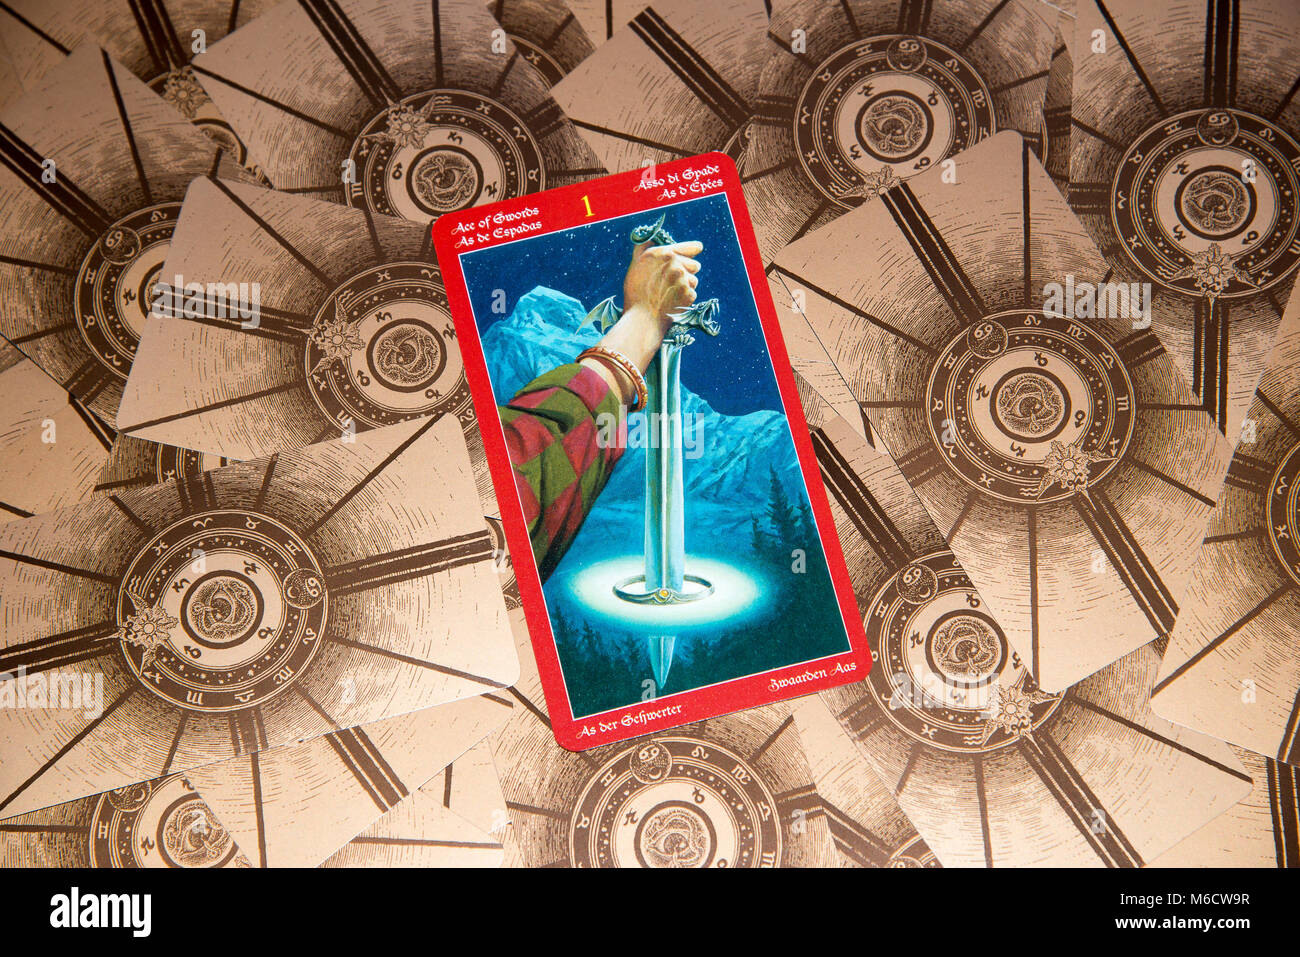 Moskau, Russland - 18. Februar 2018: Tarot Karte As der Schwerter. Dragon tarot Deck. Esoterische geheimnisvollen Hintergrund im gotischen Stil Stockfoto